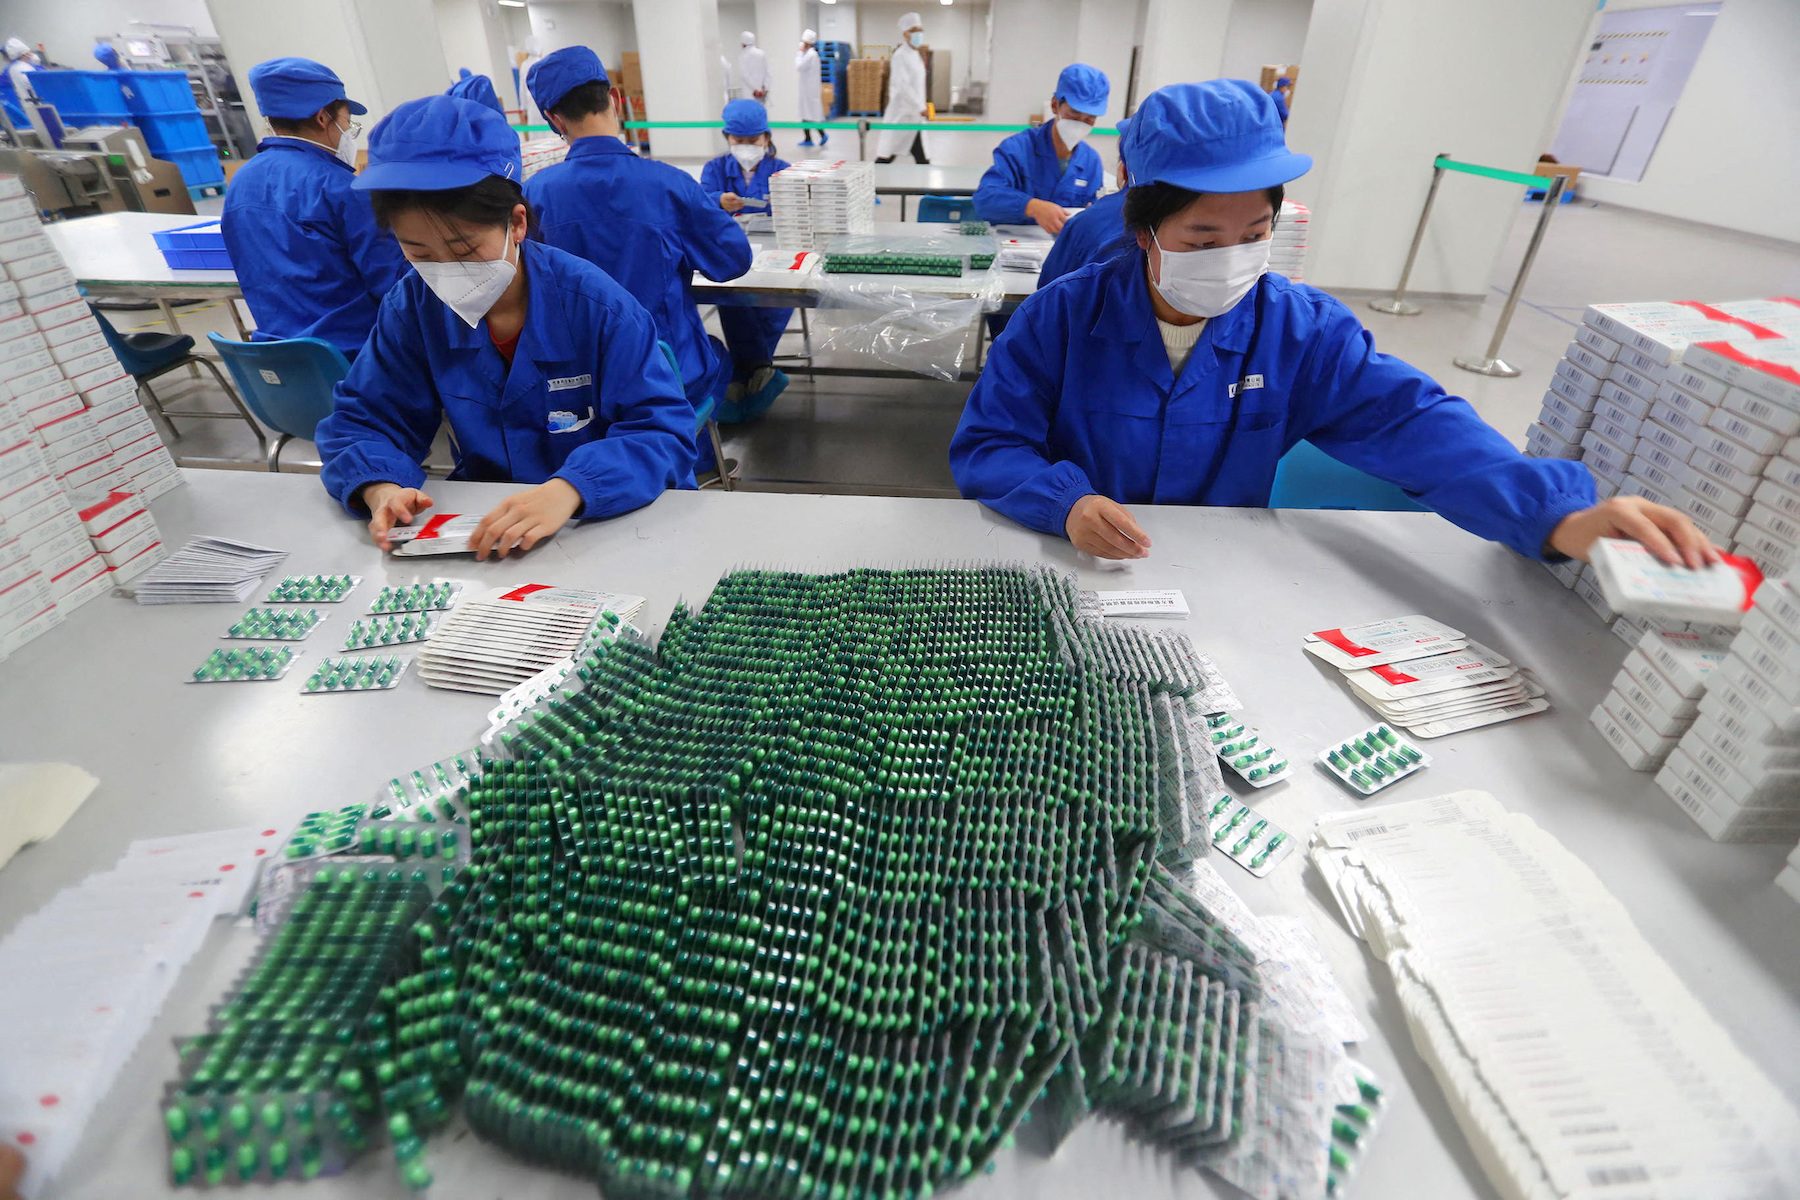 Kontrak manufaktur Tiongkok semakin ketat seiring meningkatnya infeksi COVID-19